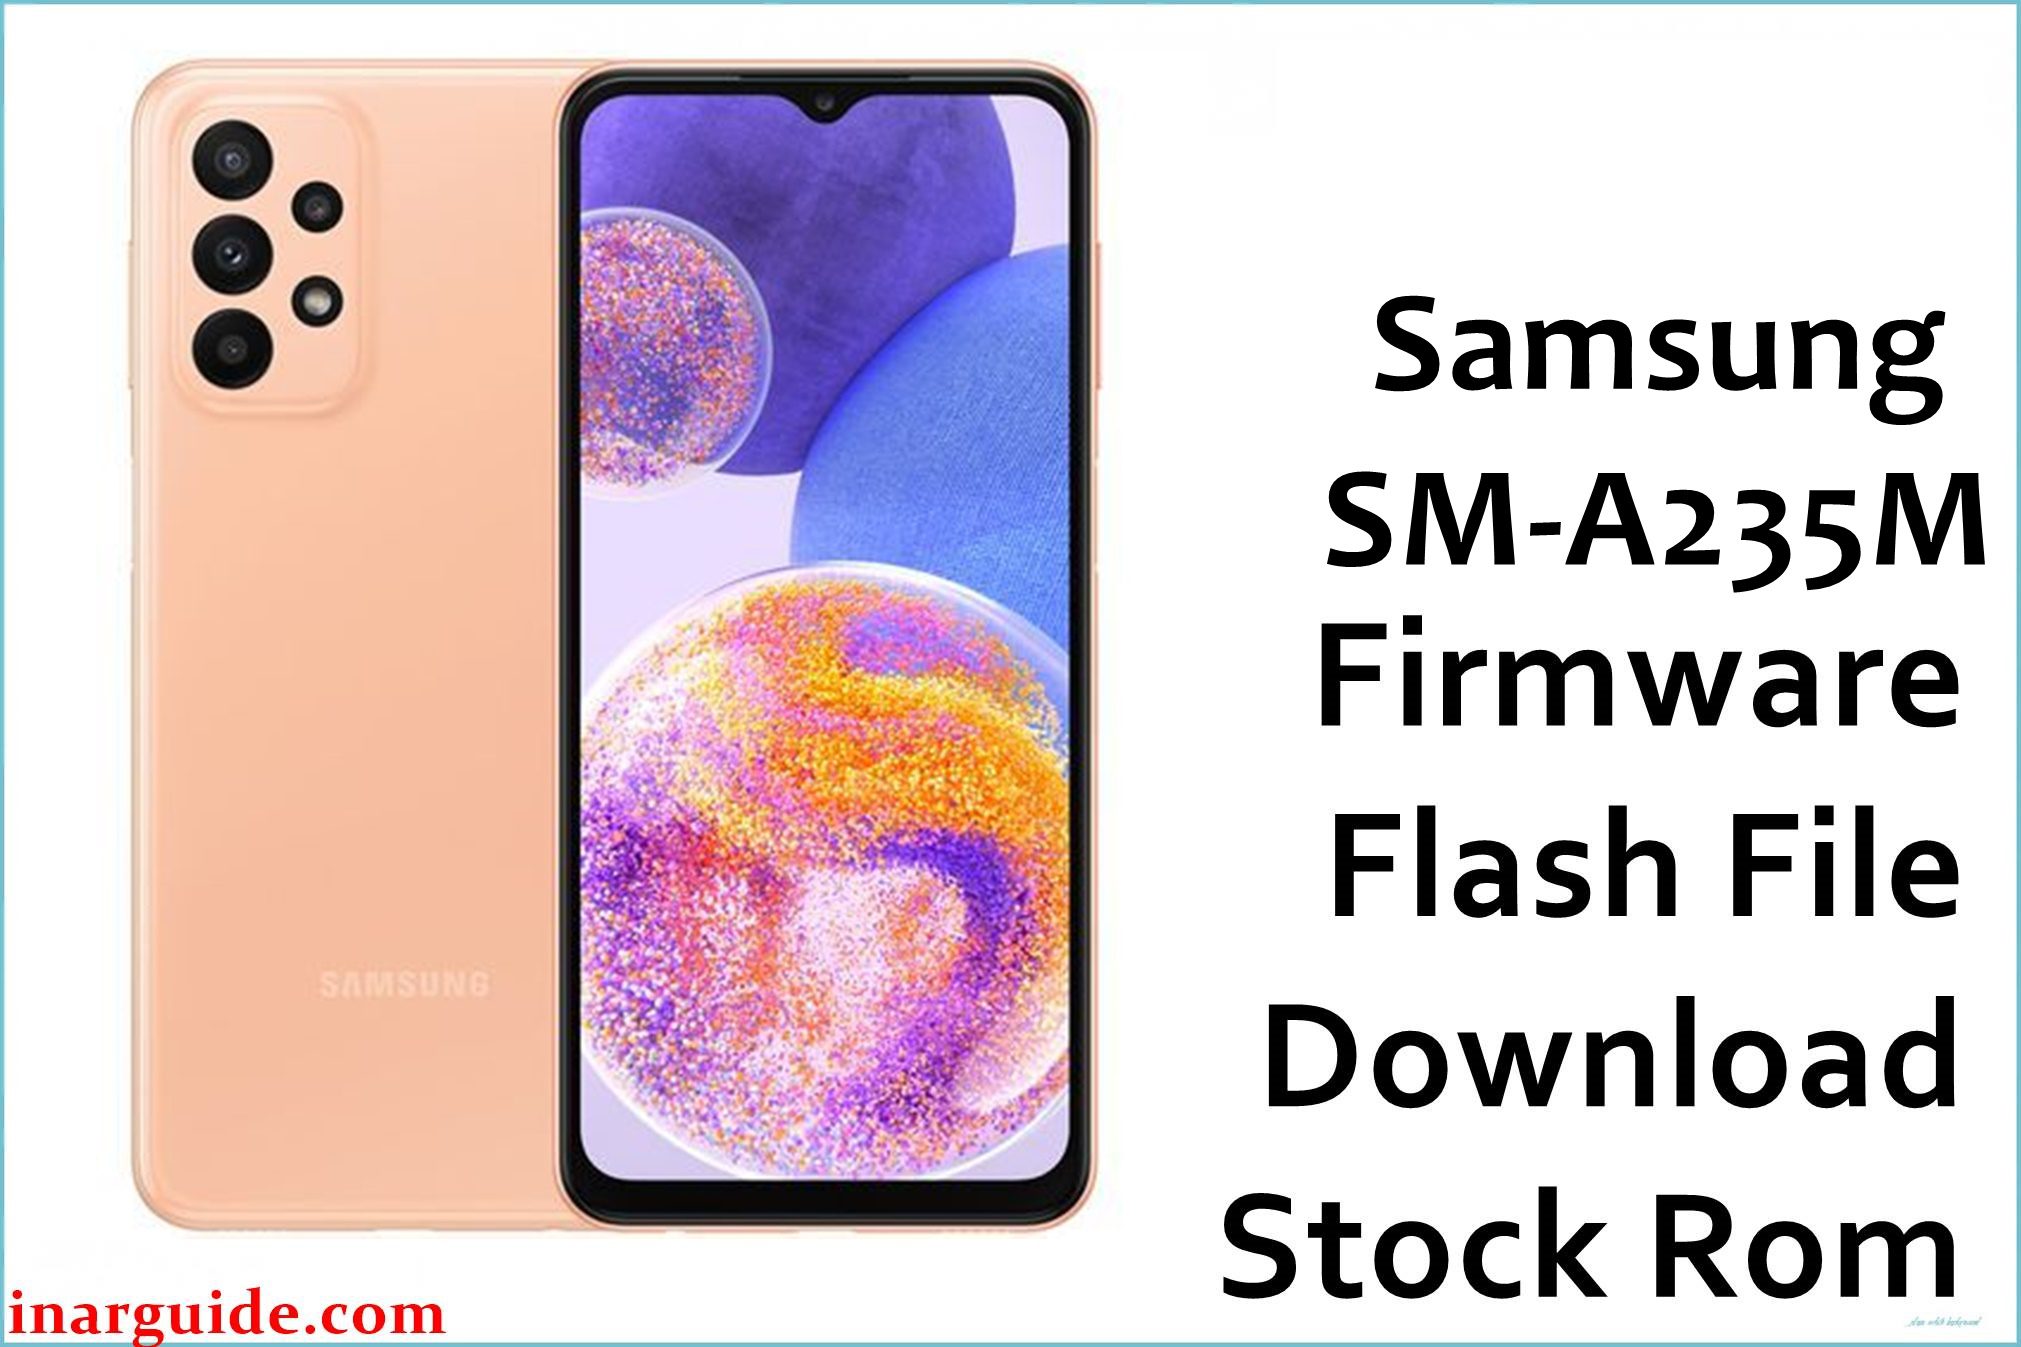 Samsung Galaxy A23 SM-A235M